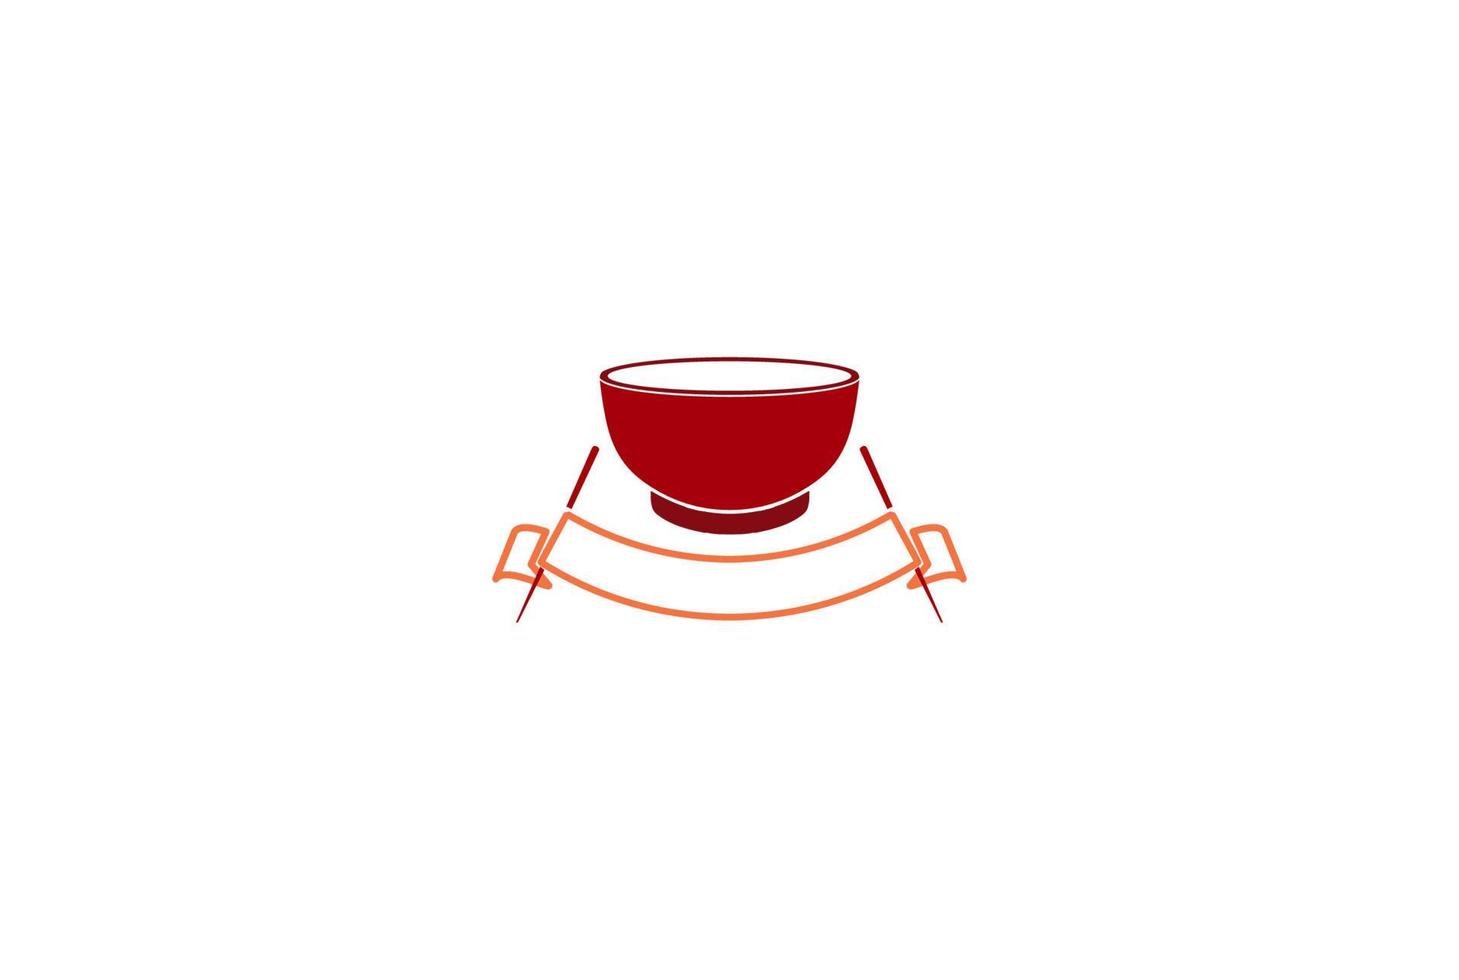 röd skål och ätpinne för nudel asiatisk japansk kinesisk koreansk orientalisk mat restaurang logotyp design vektor